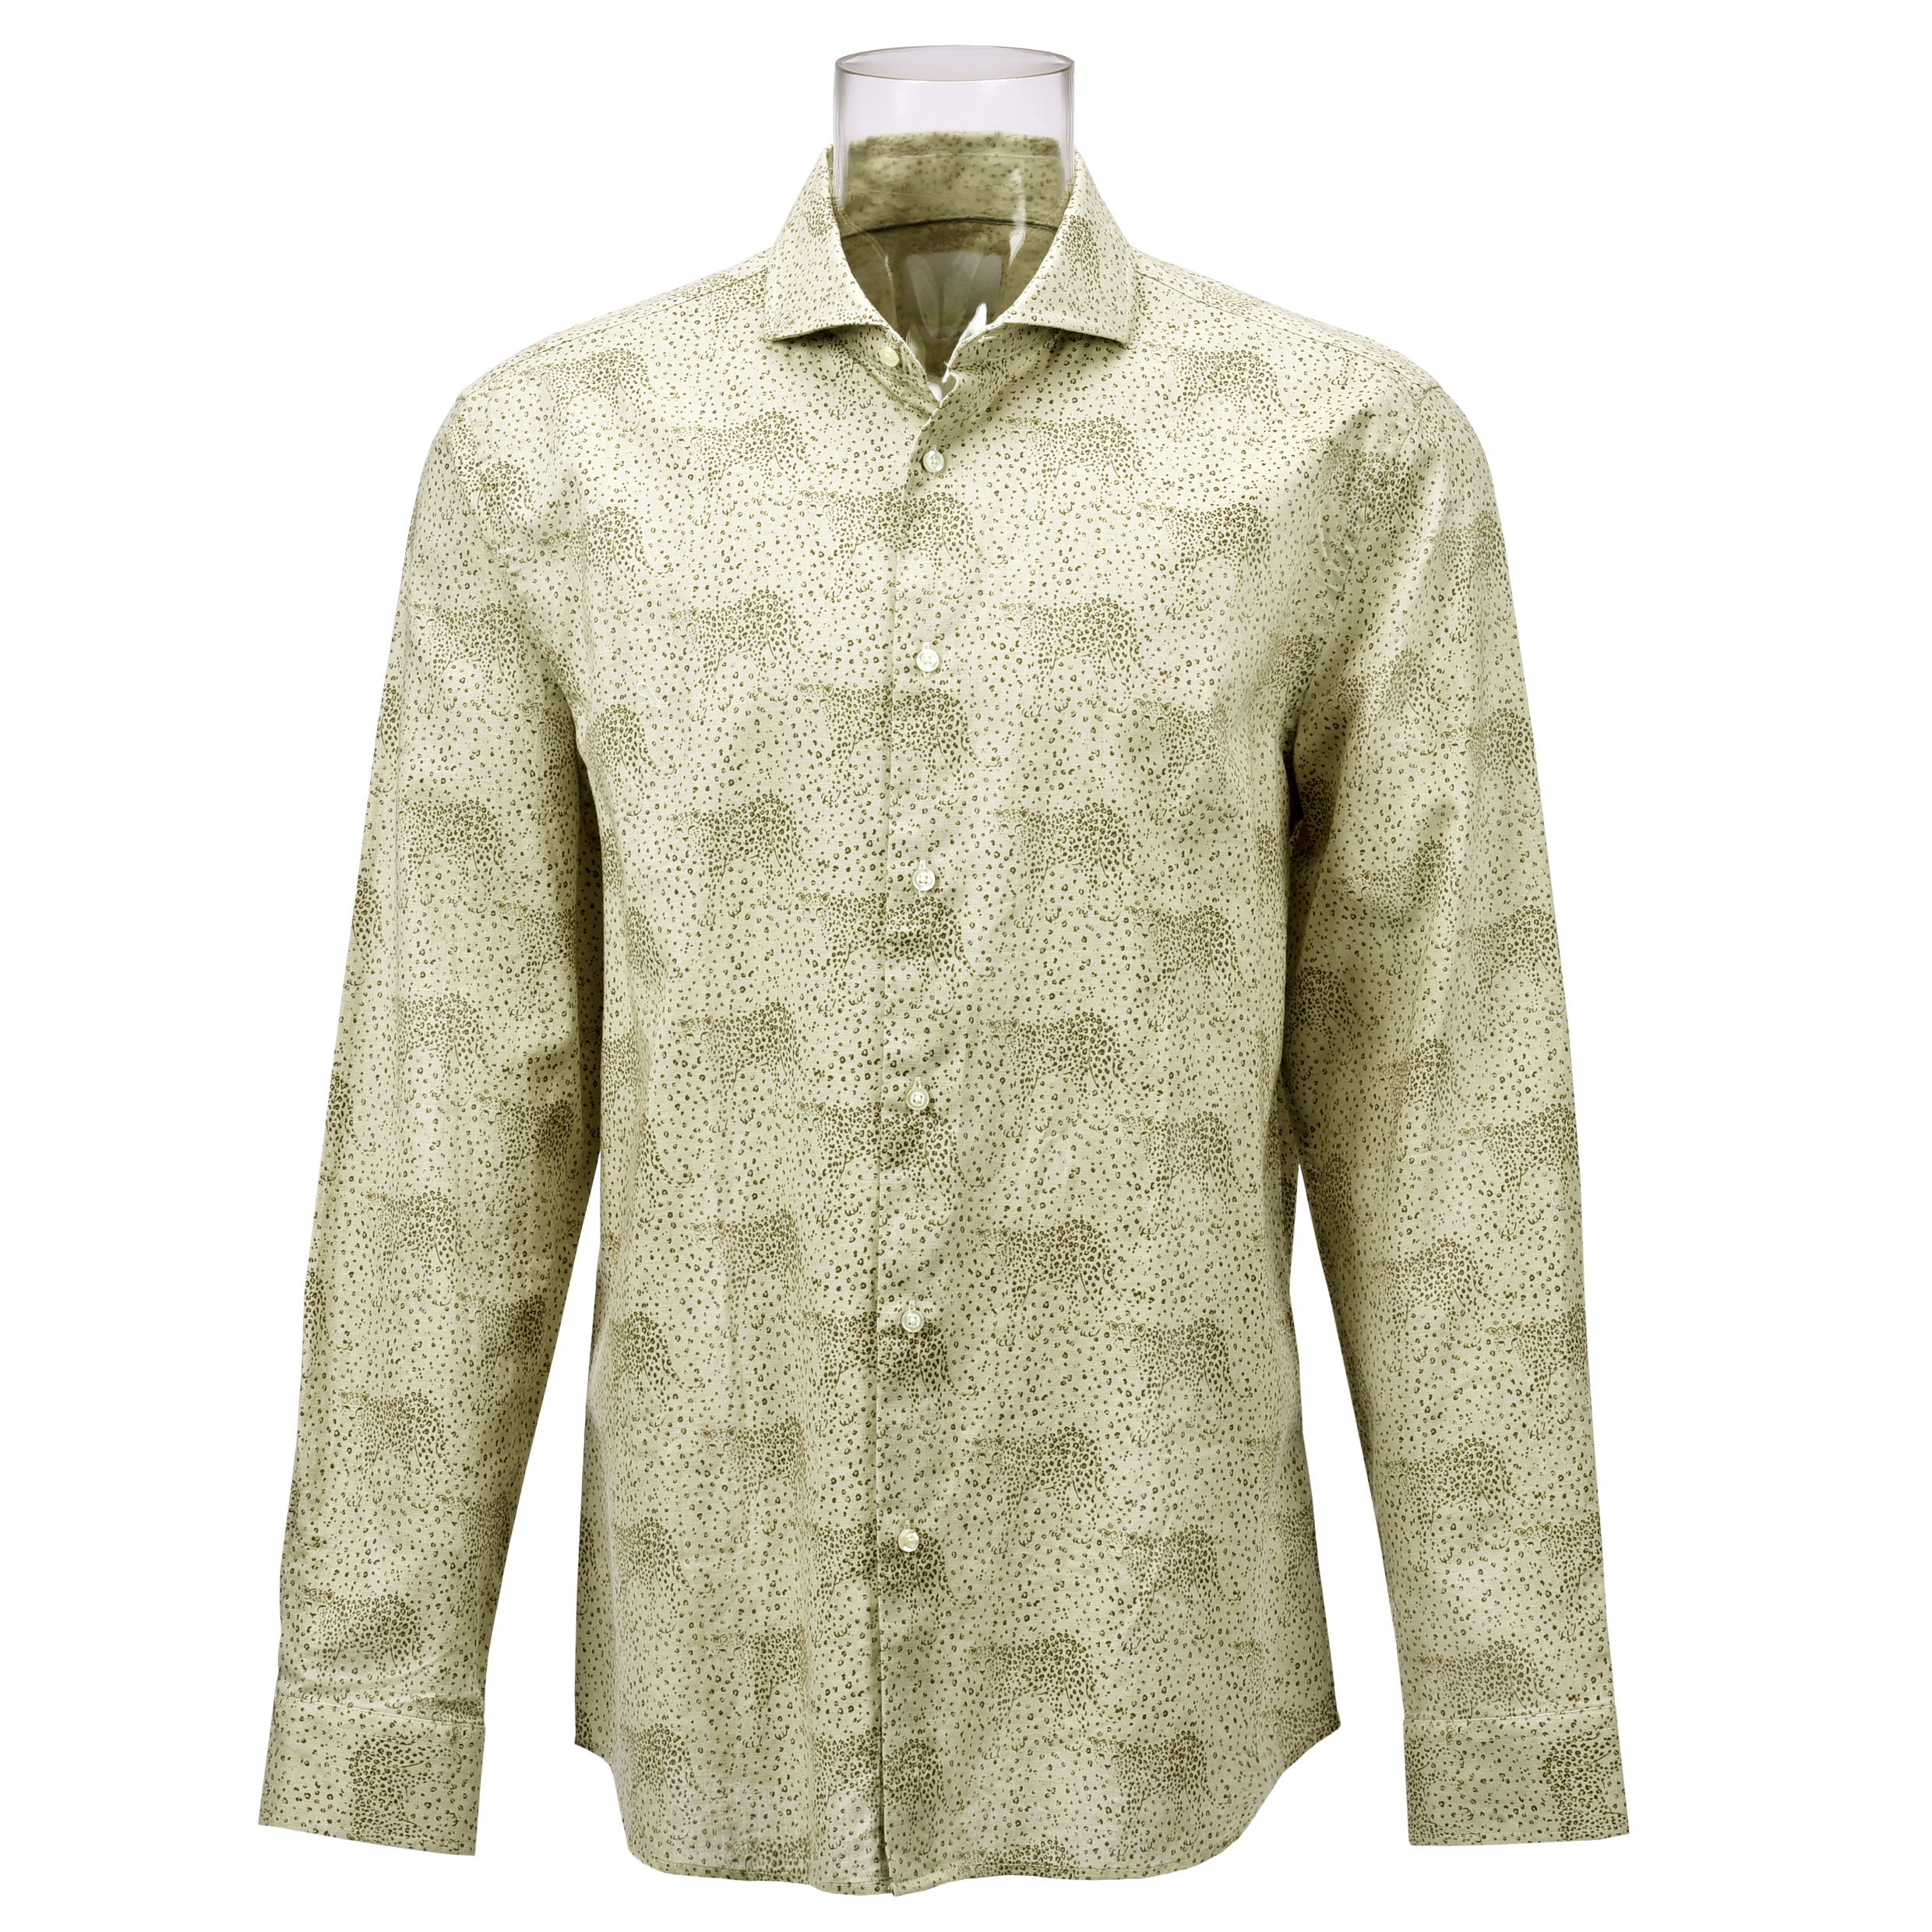 Men’s Shirt Cotton Linen Blended Long Sleeve Leopard Printed Shirt For Men GTCW106541G1